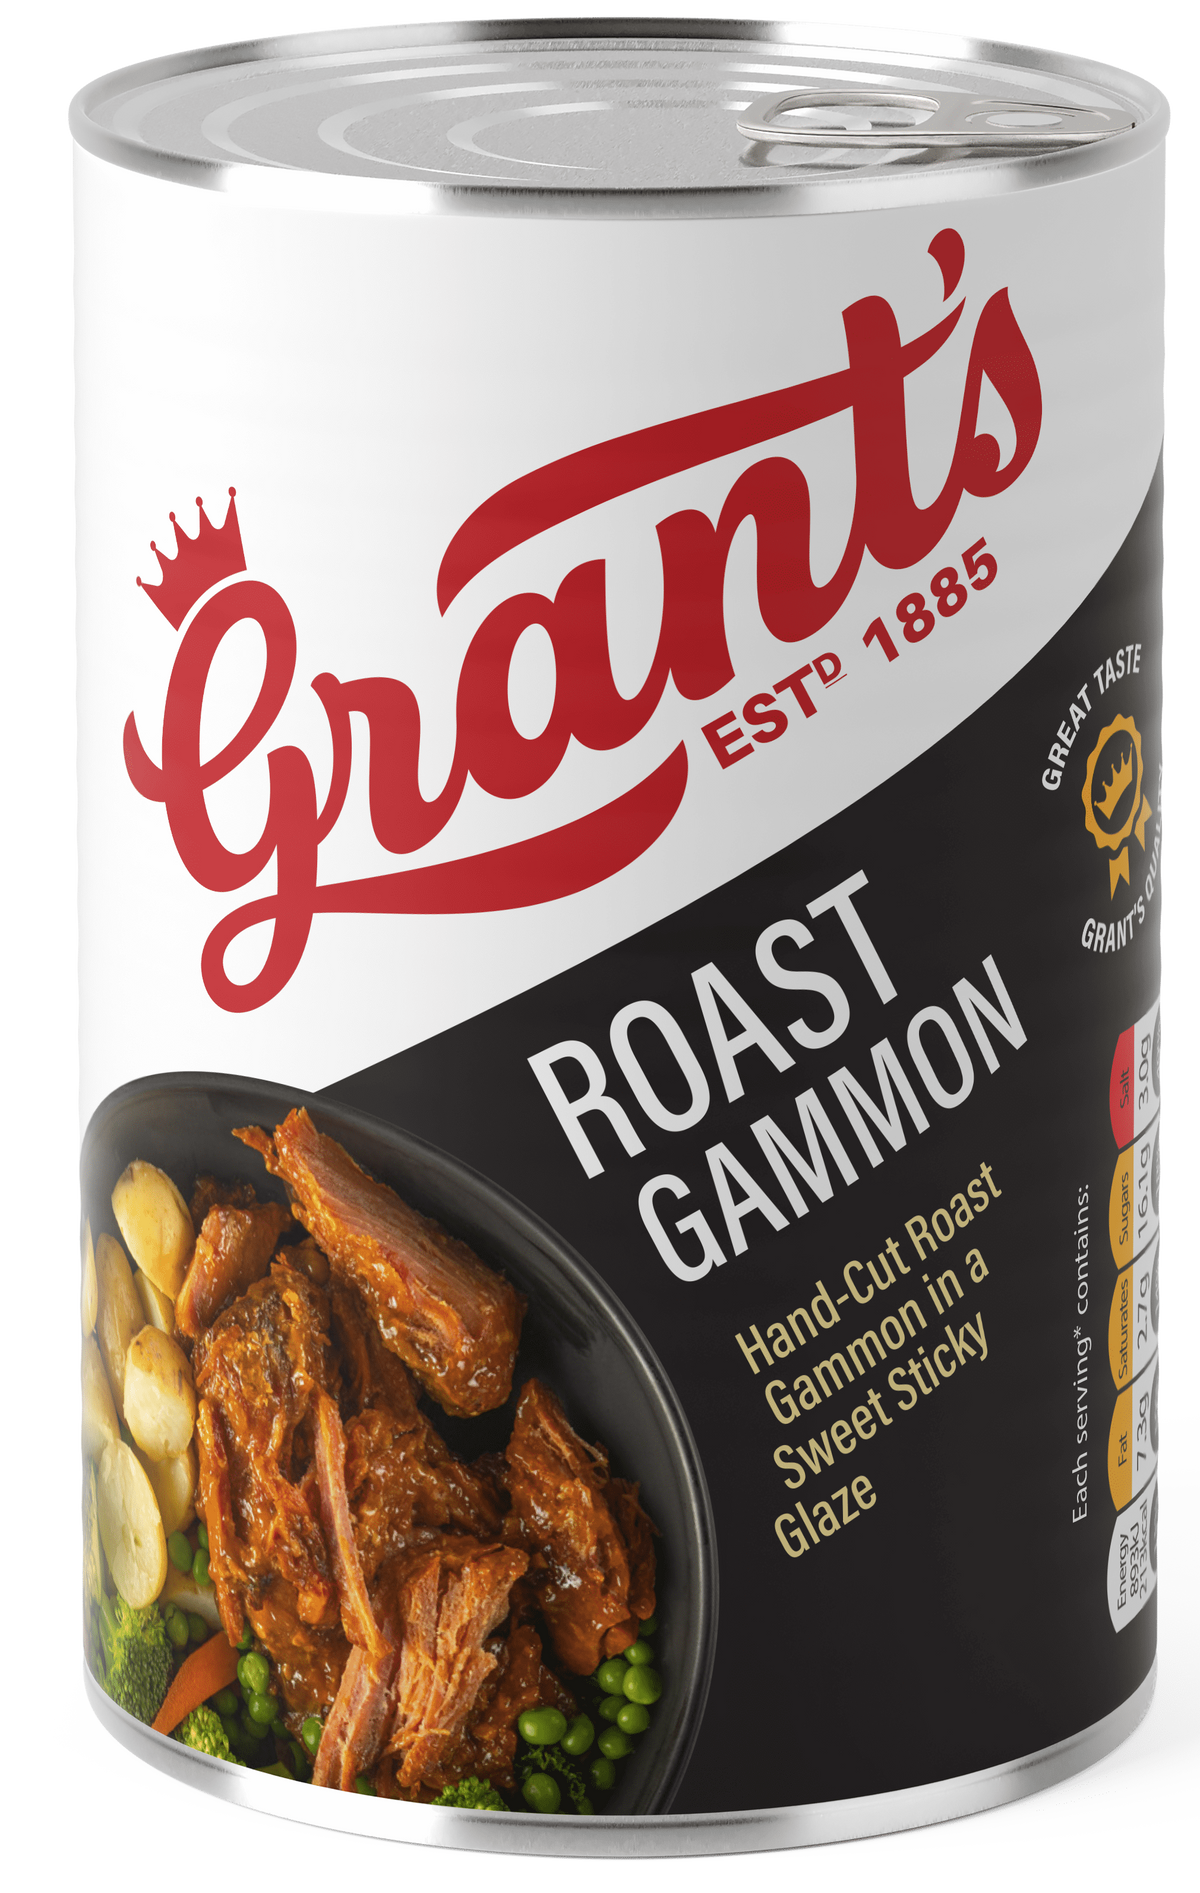 Roast Gammon